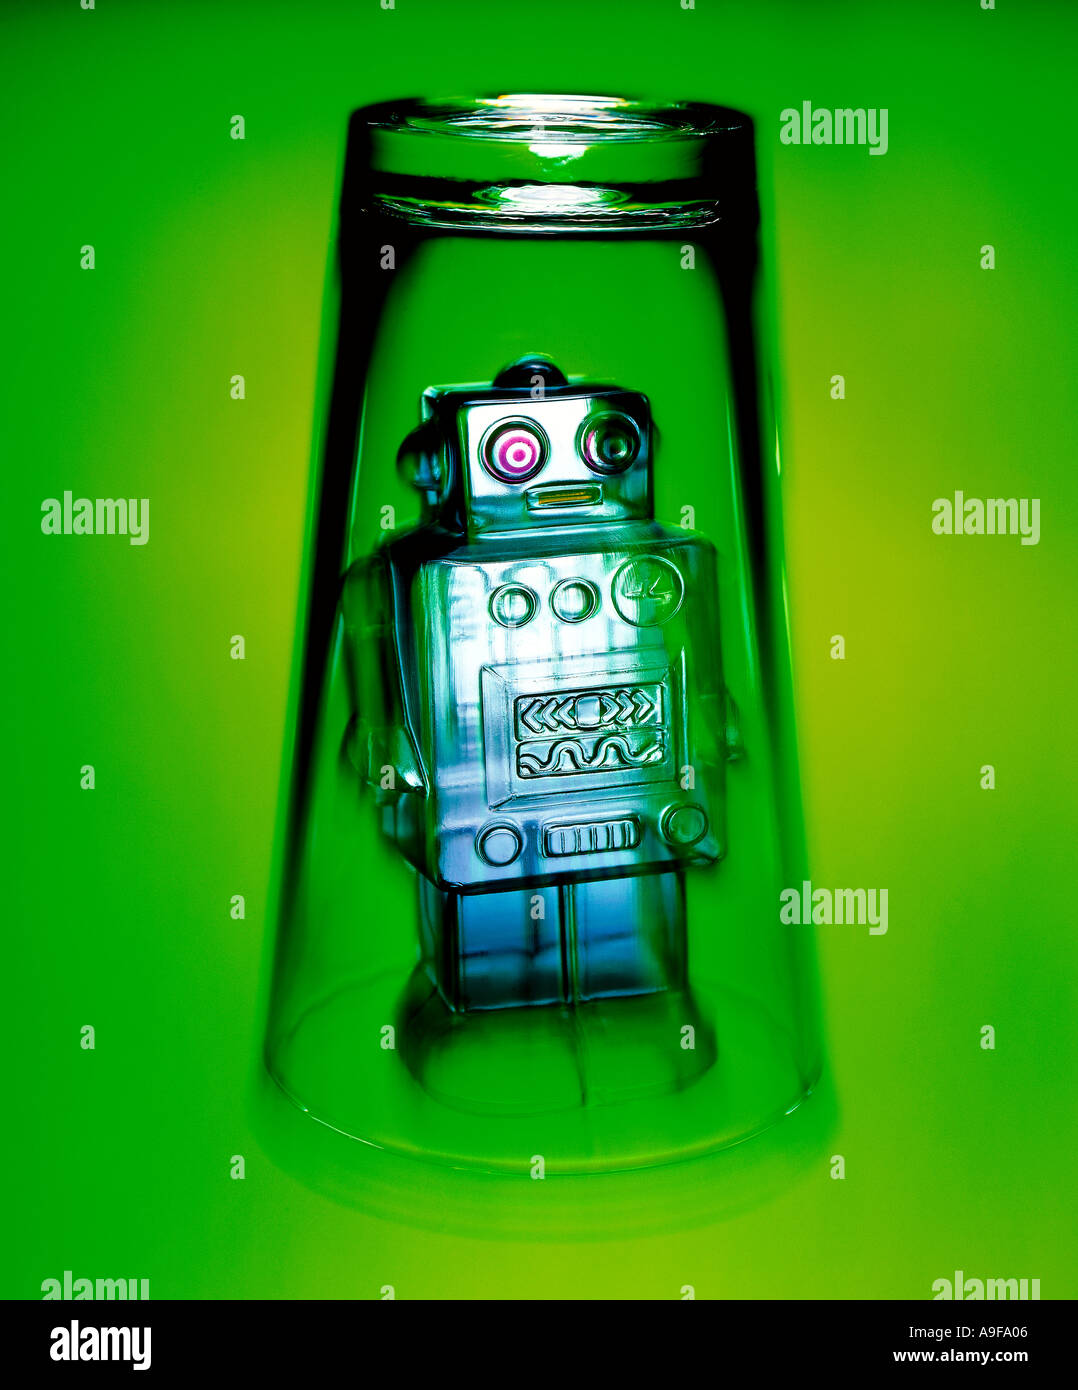 Robot jouet piégé dans le verre sur la surface verte Banque D'Images